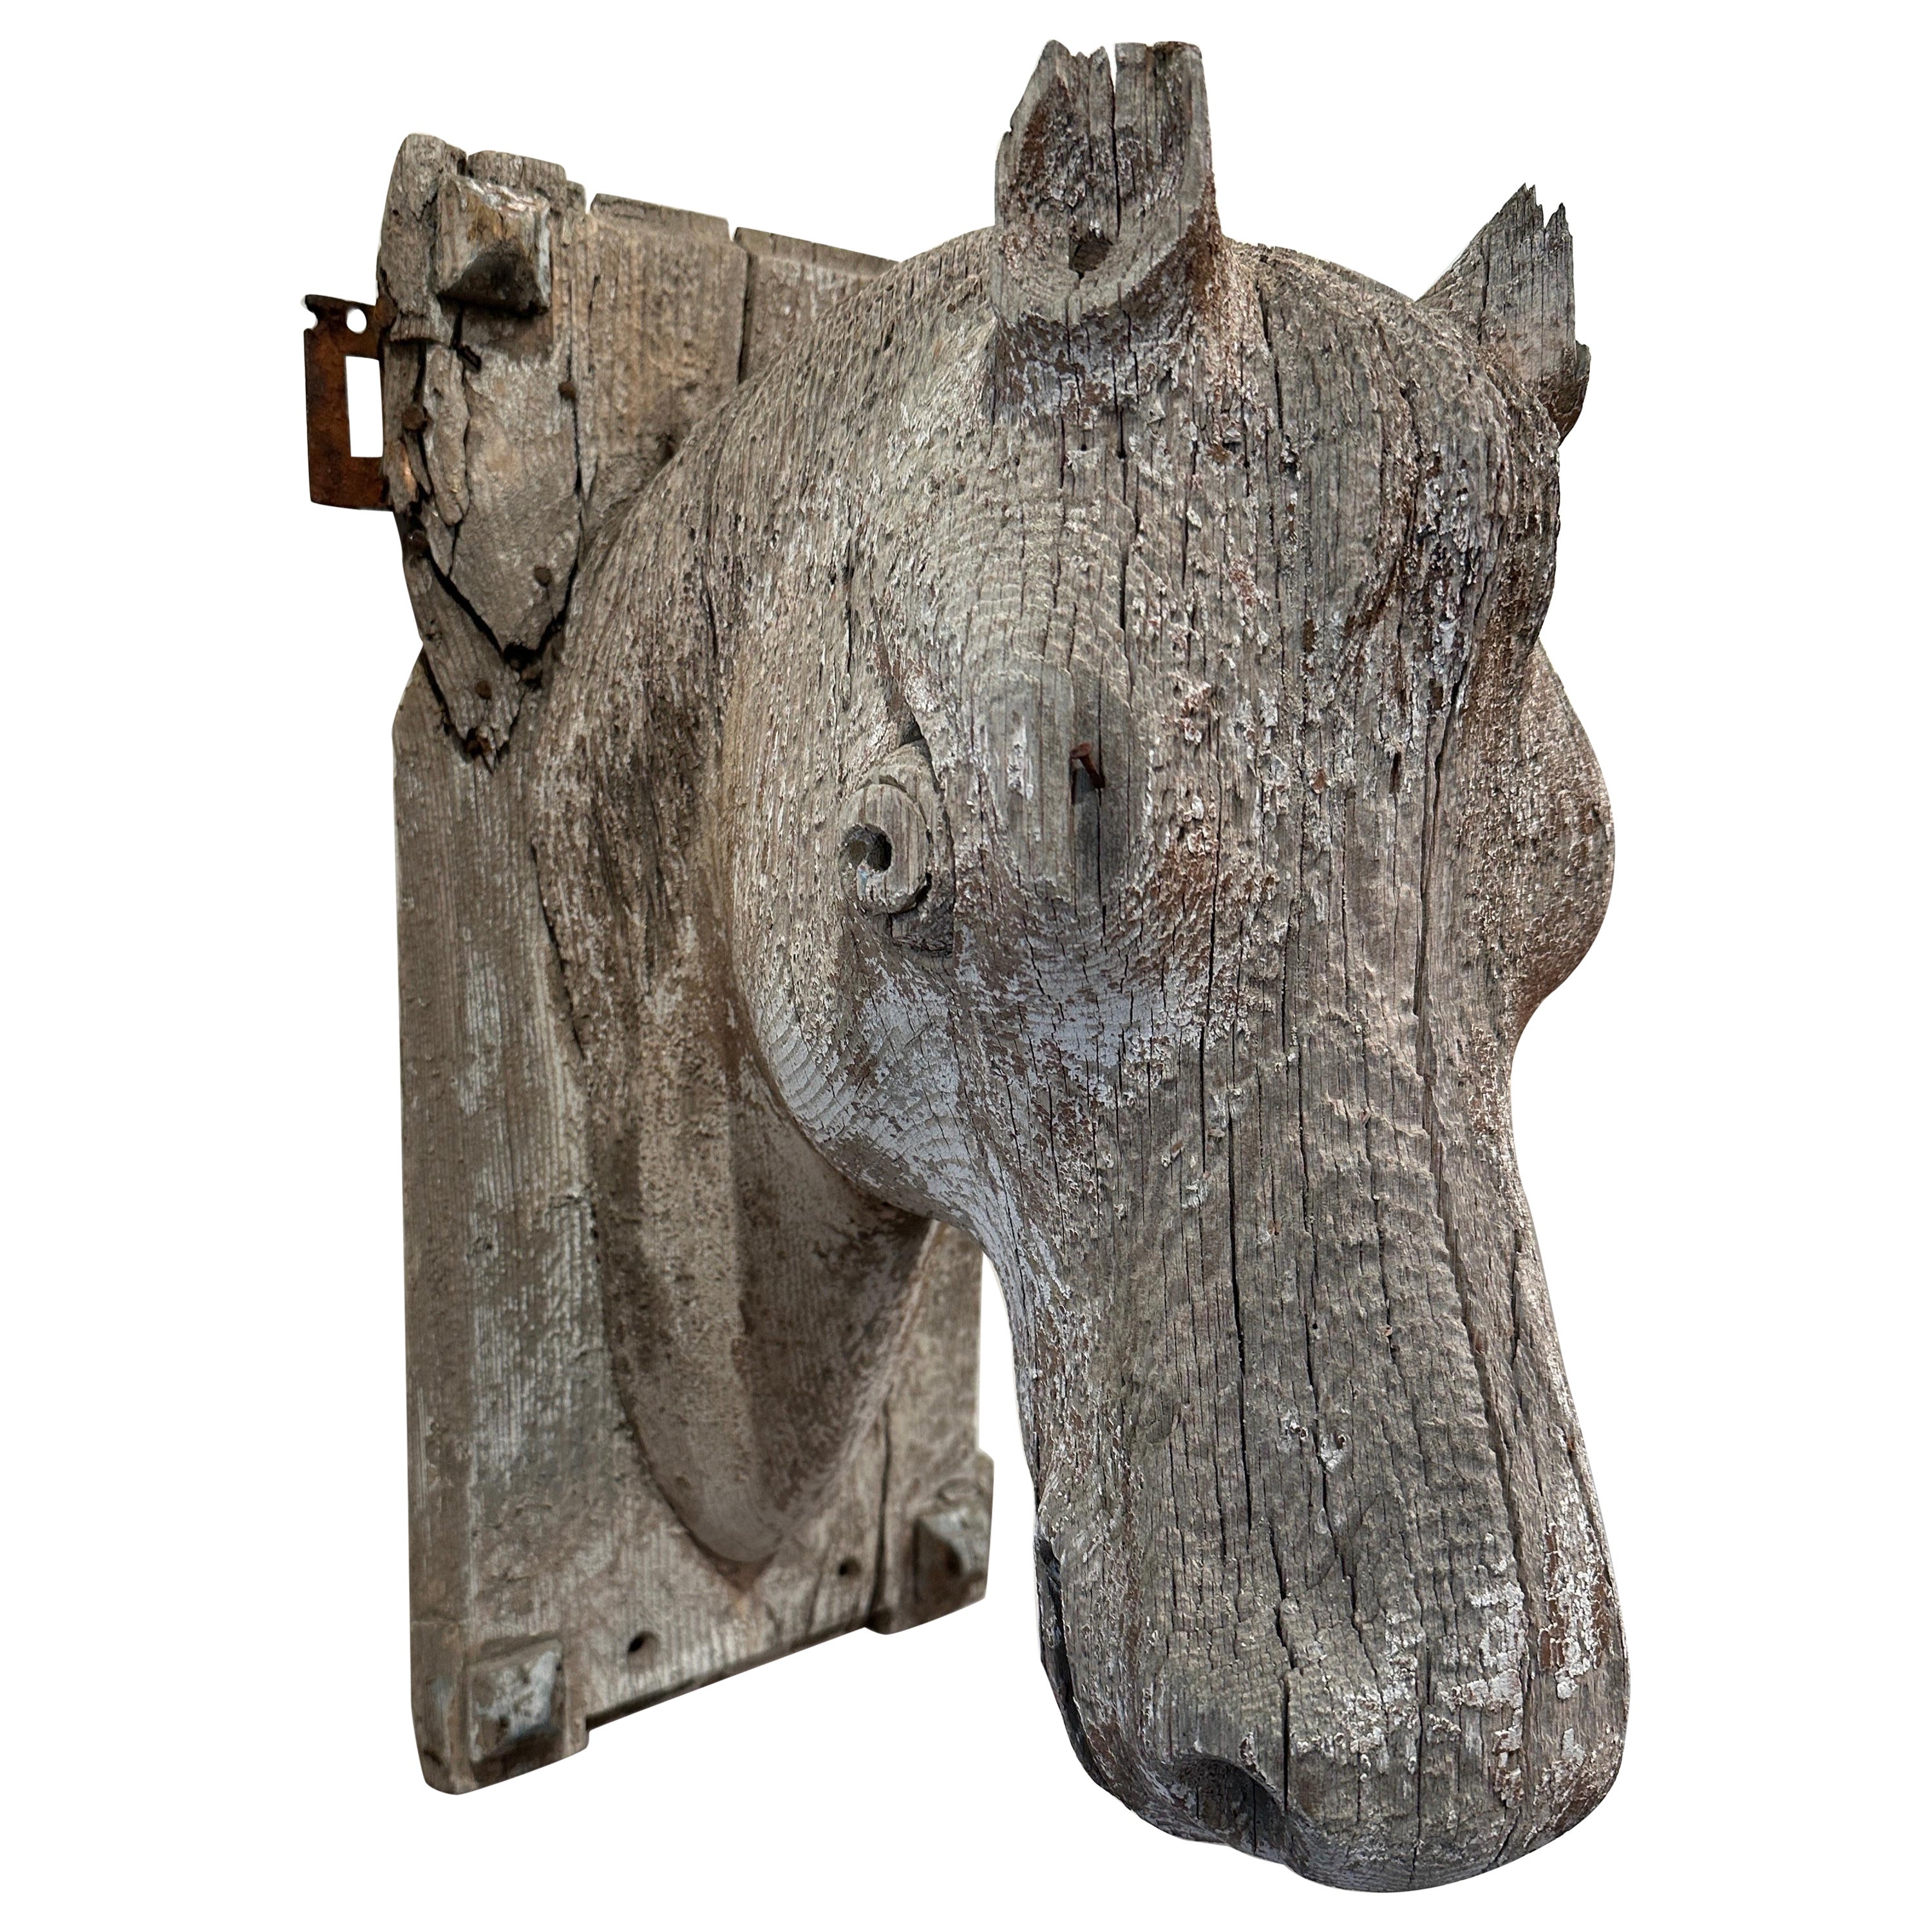 A.I.C. Sculpture à tête de poney en bois sculpté, grandeur nature.